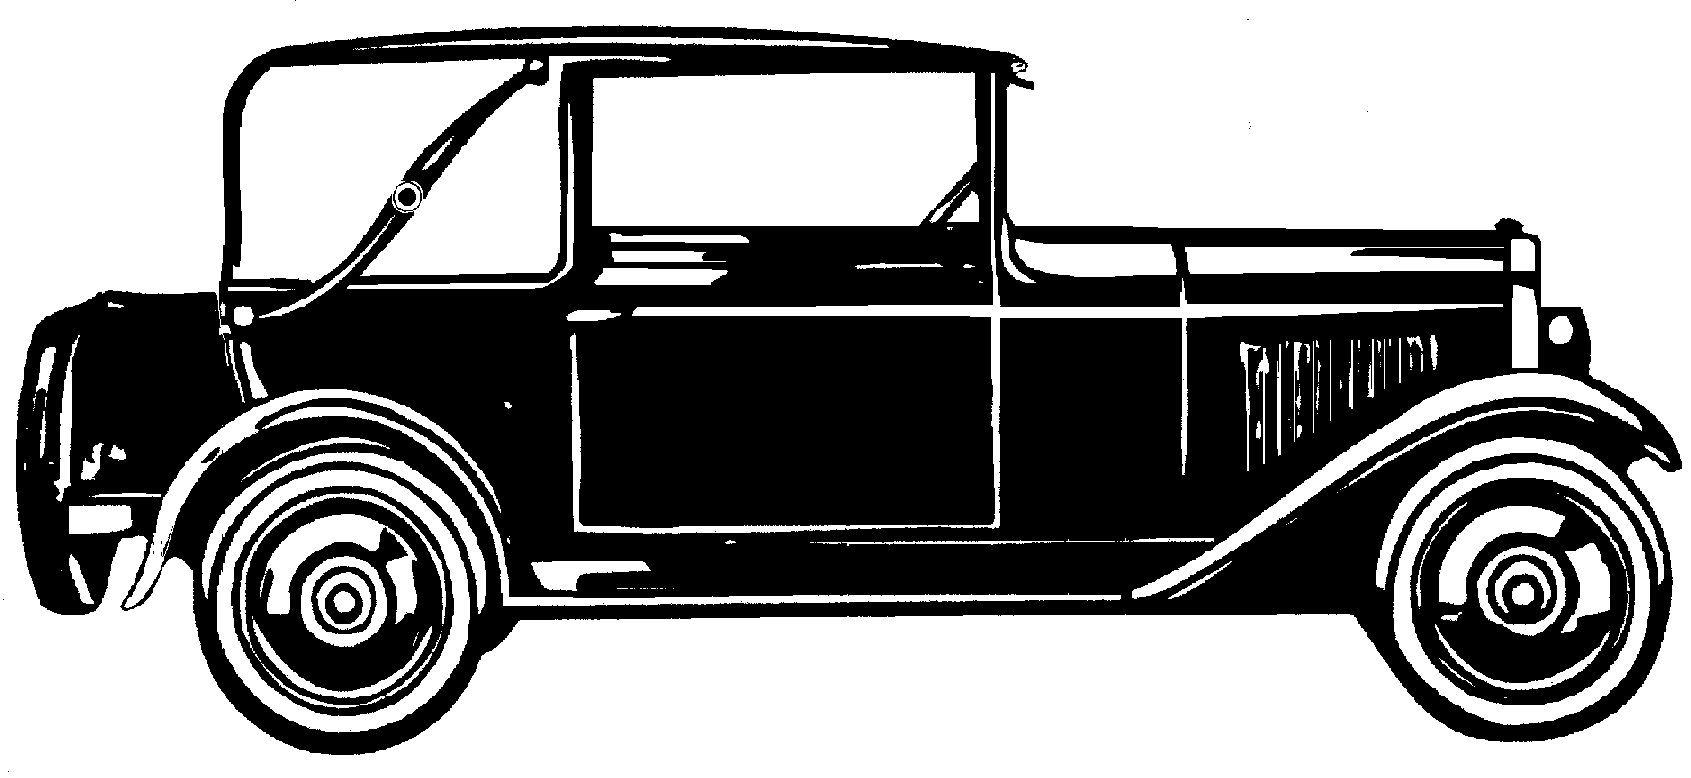 Cotxe NSU Cabriolet 7-34 1928